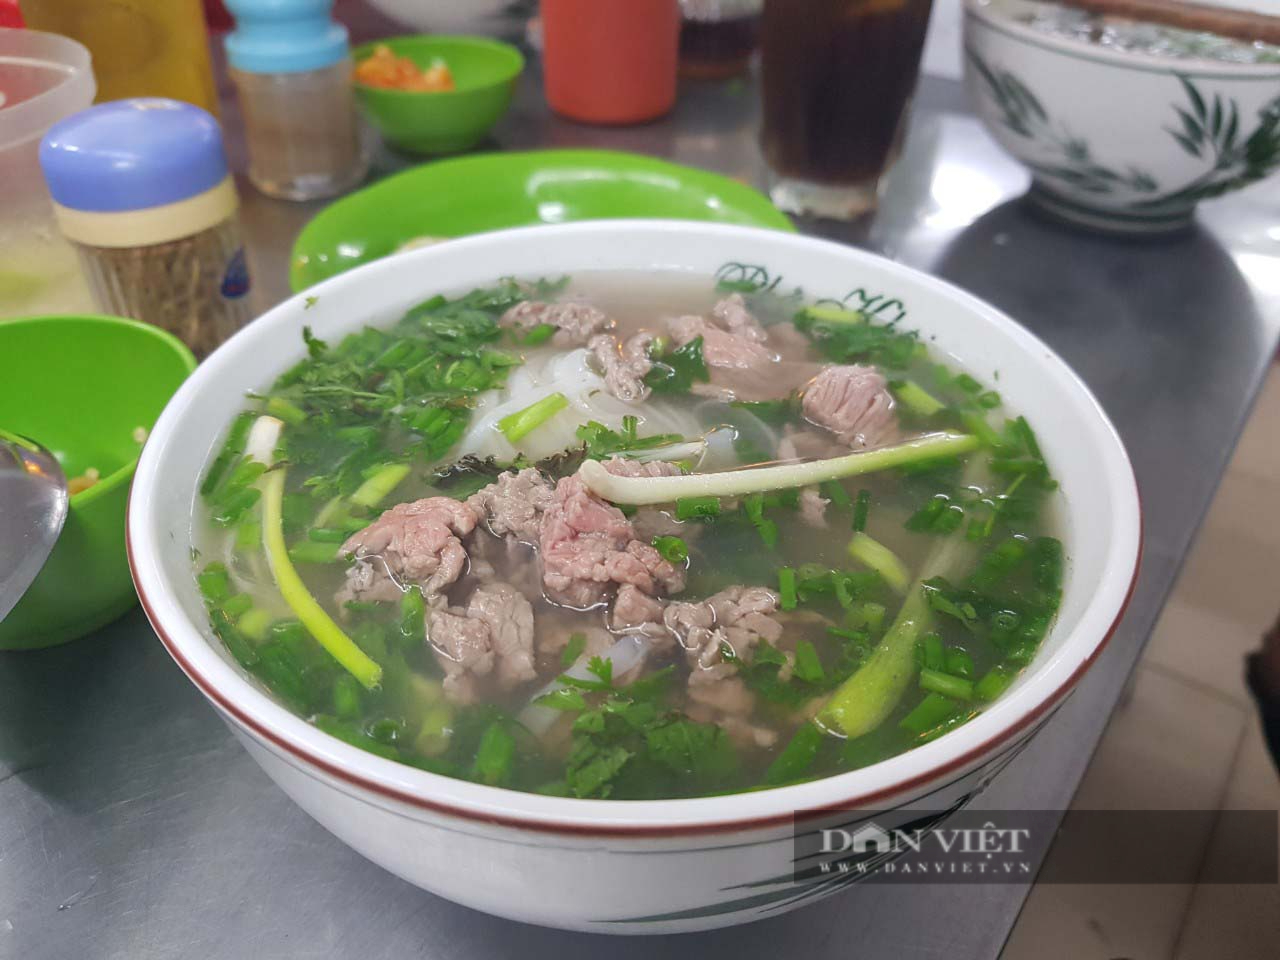 Mở cửa sau mùa dịch, quán phở “ruột” của ĐTQG Việt Nam hút khách sành ăn - Ảnh 1.